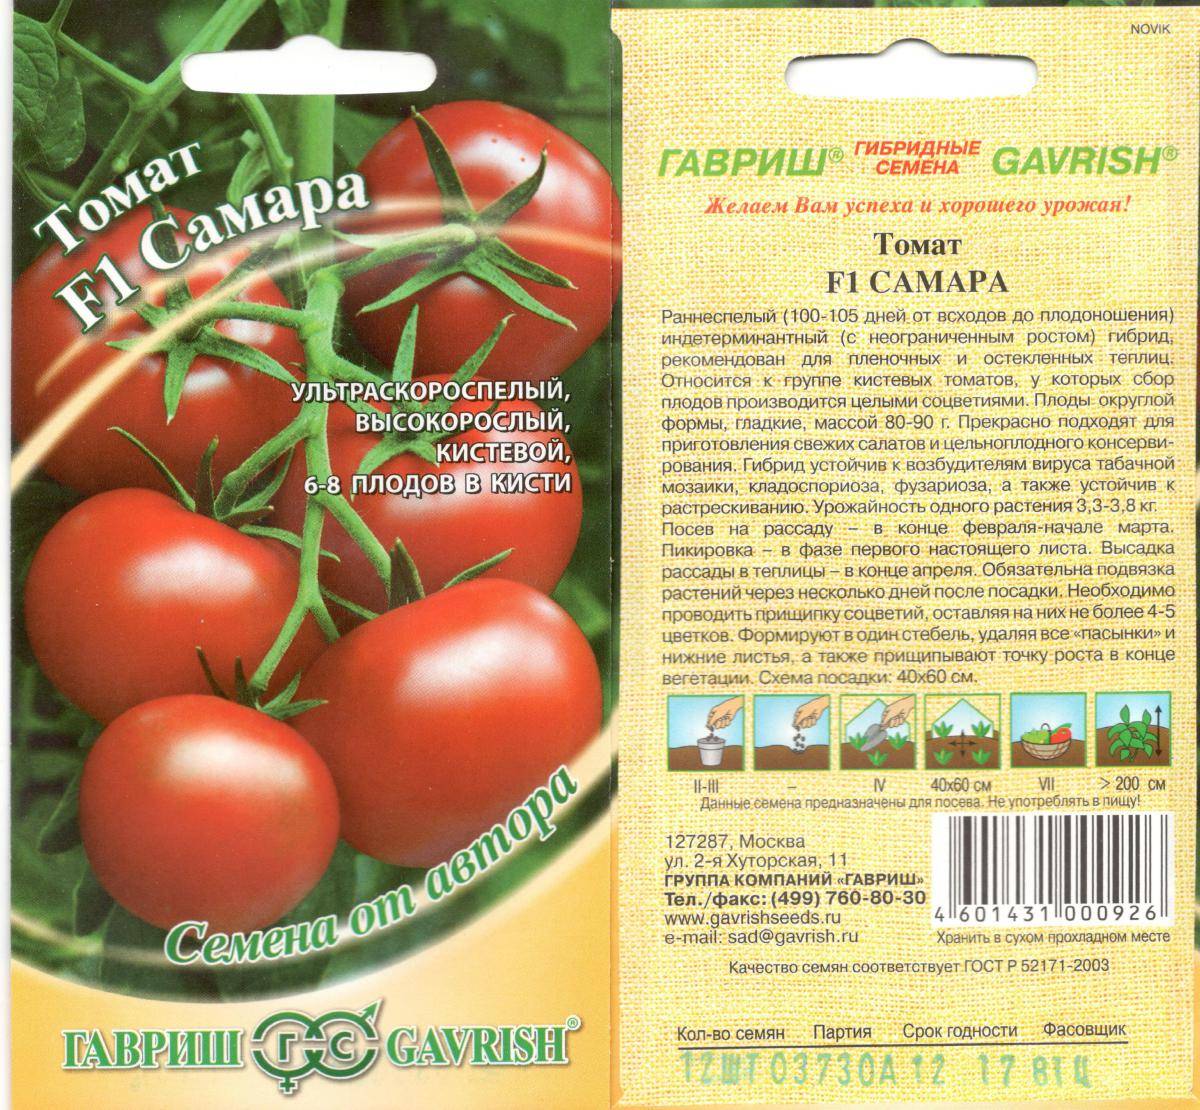 Лучшие сорта томатов для кировской области